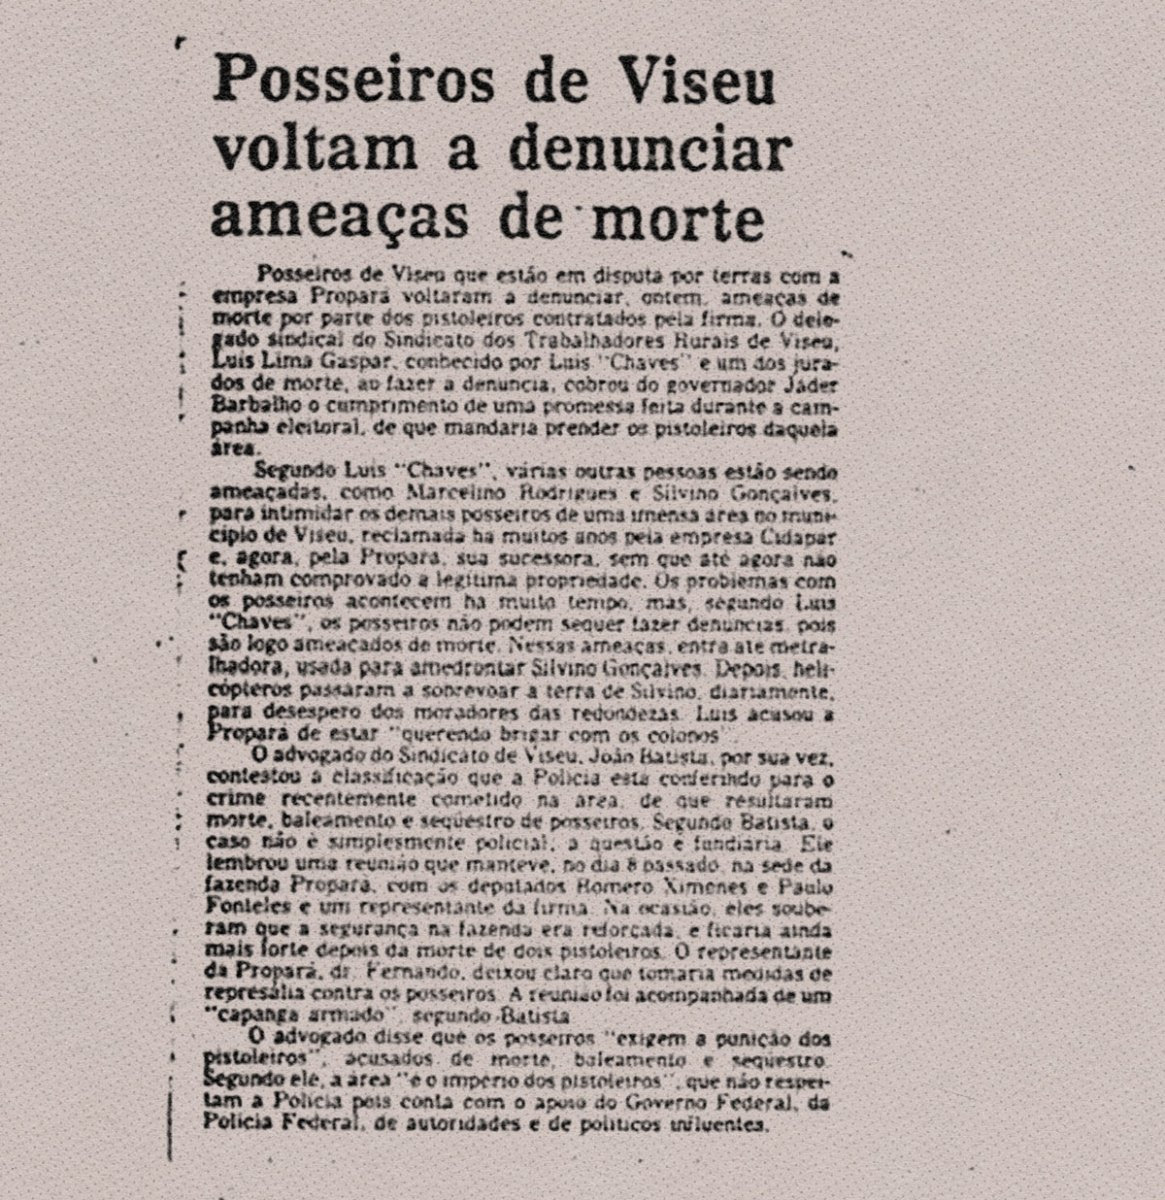 Reportagem da Província do Pará denunciou ameaças de morte sofridas pelos posseiros de Viseu